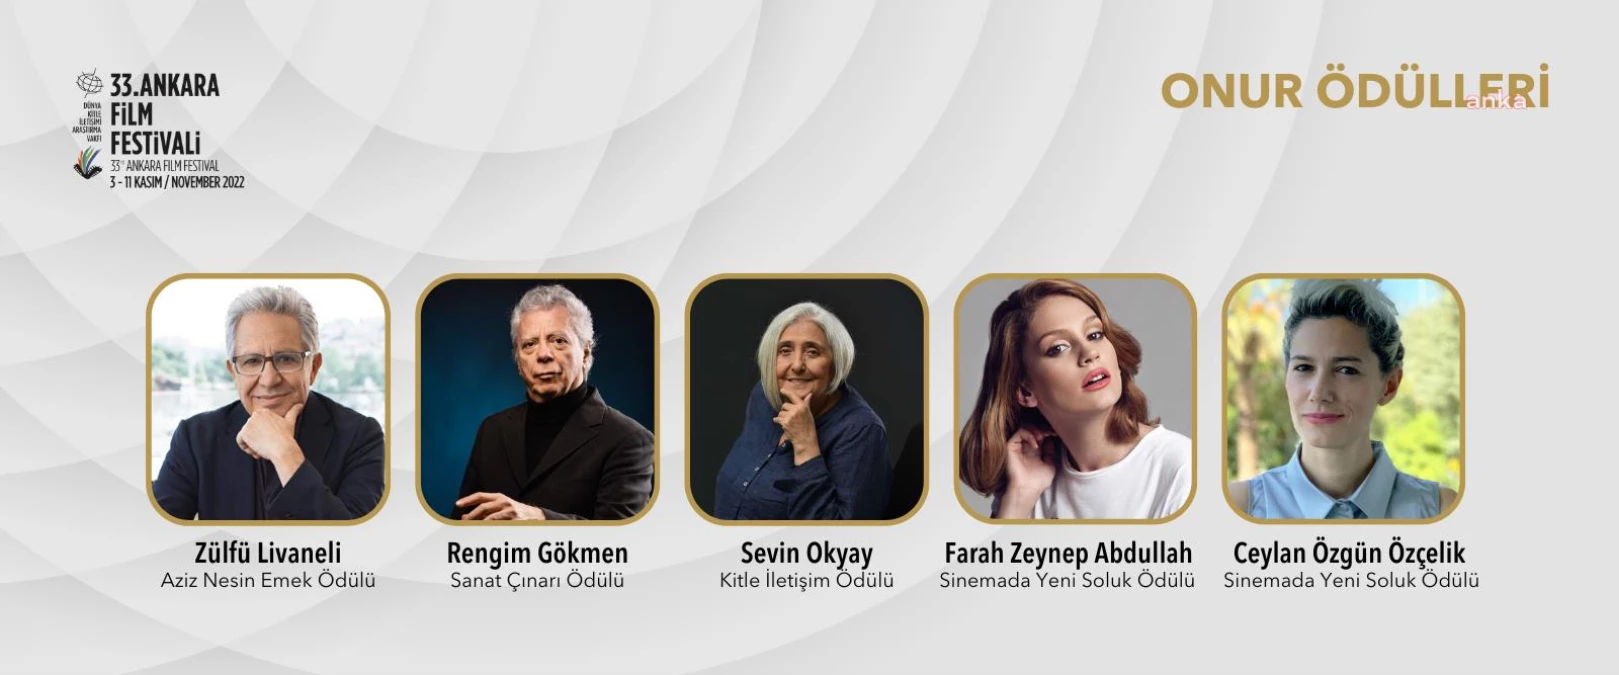 Ankara gündem: 33. Ankara Film Festivali Onur Ödüllerinin Sahipleri Açıklandı